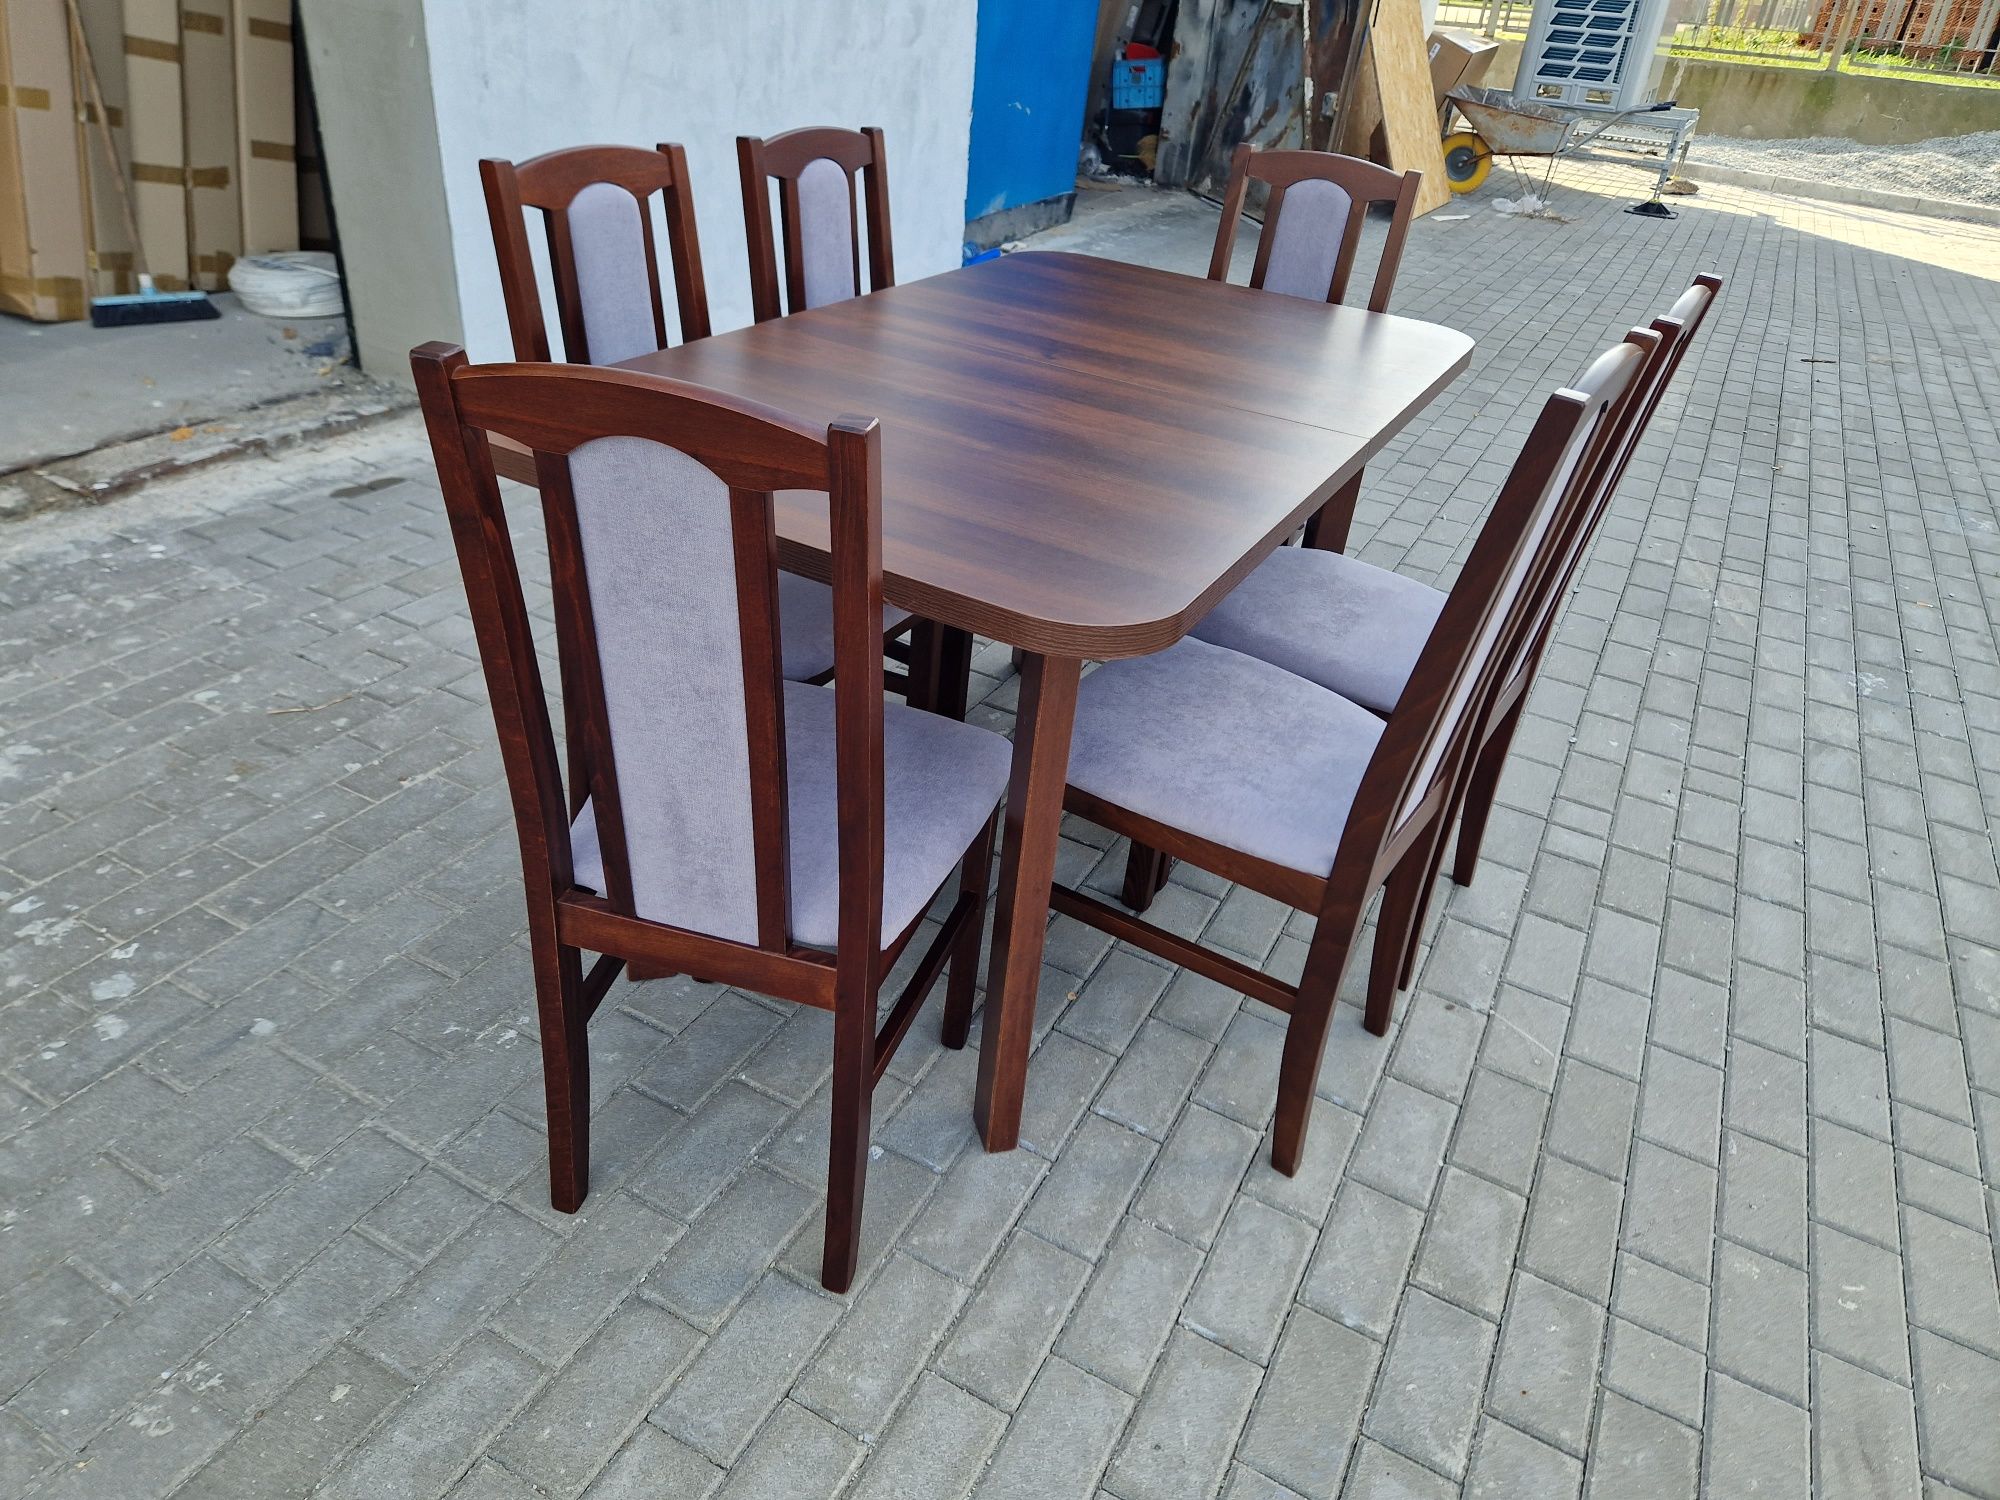 Nowe: Stół 80x140/180 + 6 krzeseł, orzech + szary, dostawa PL